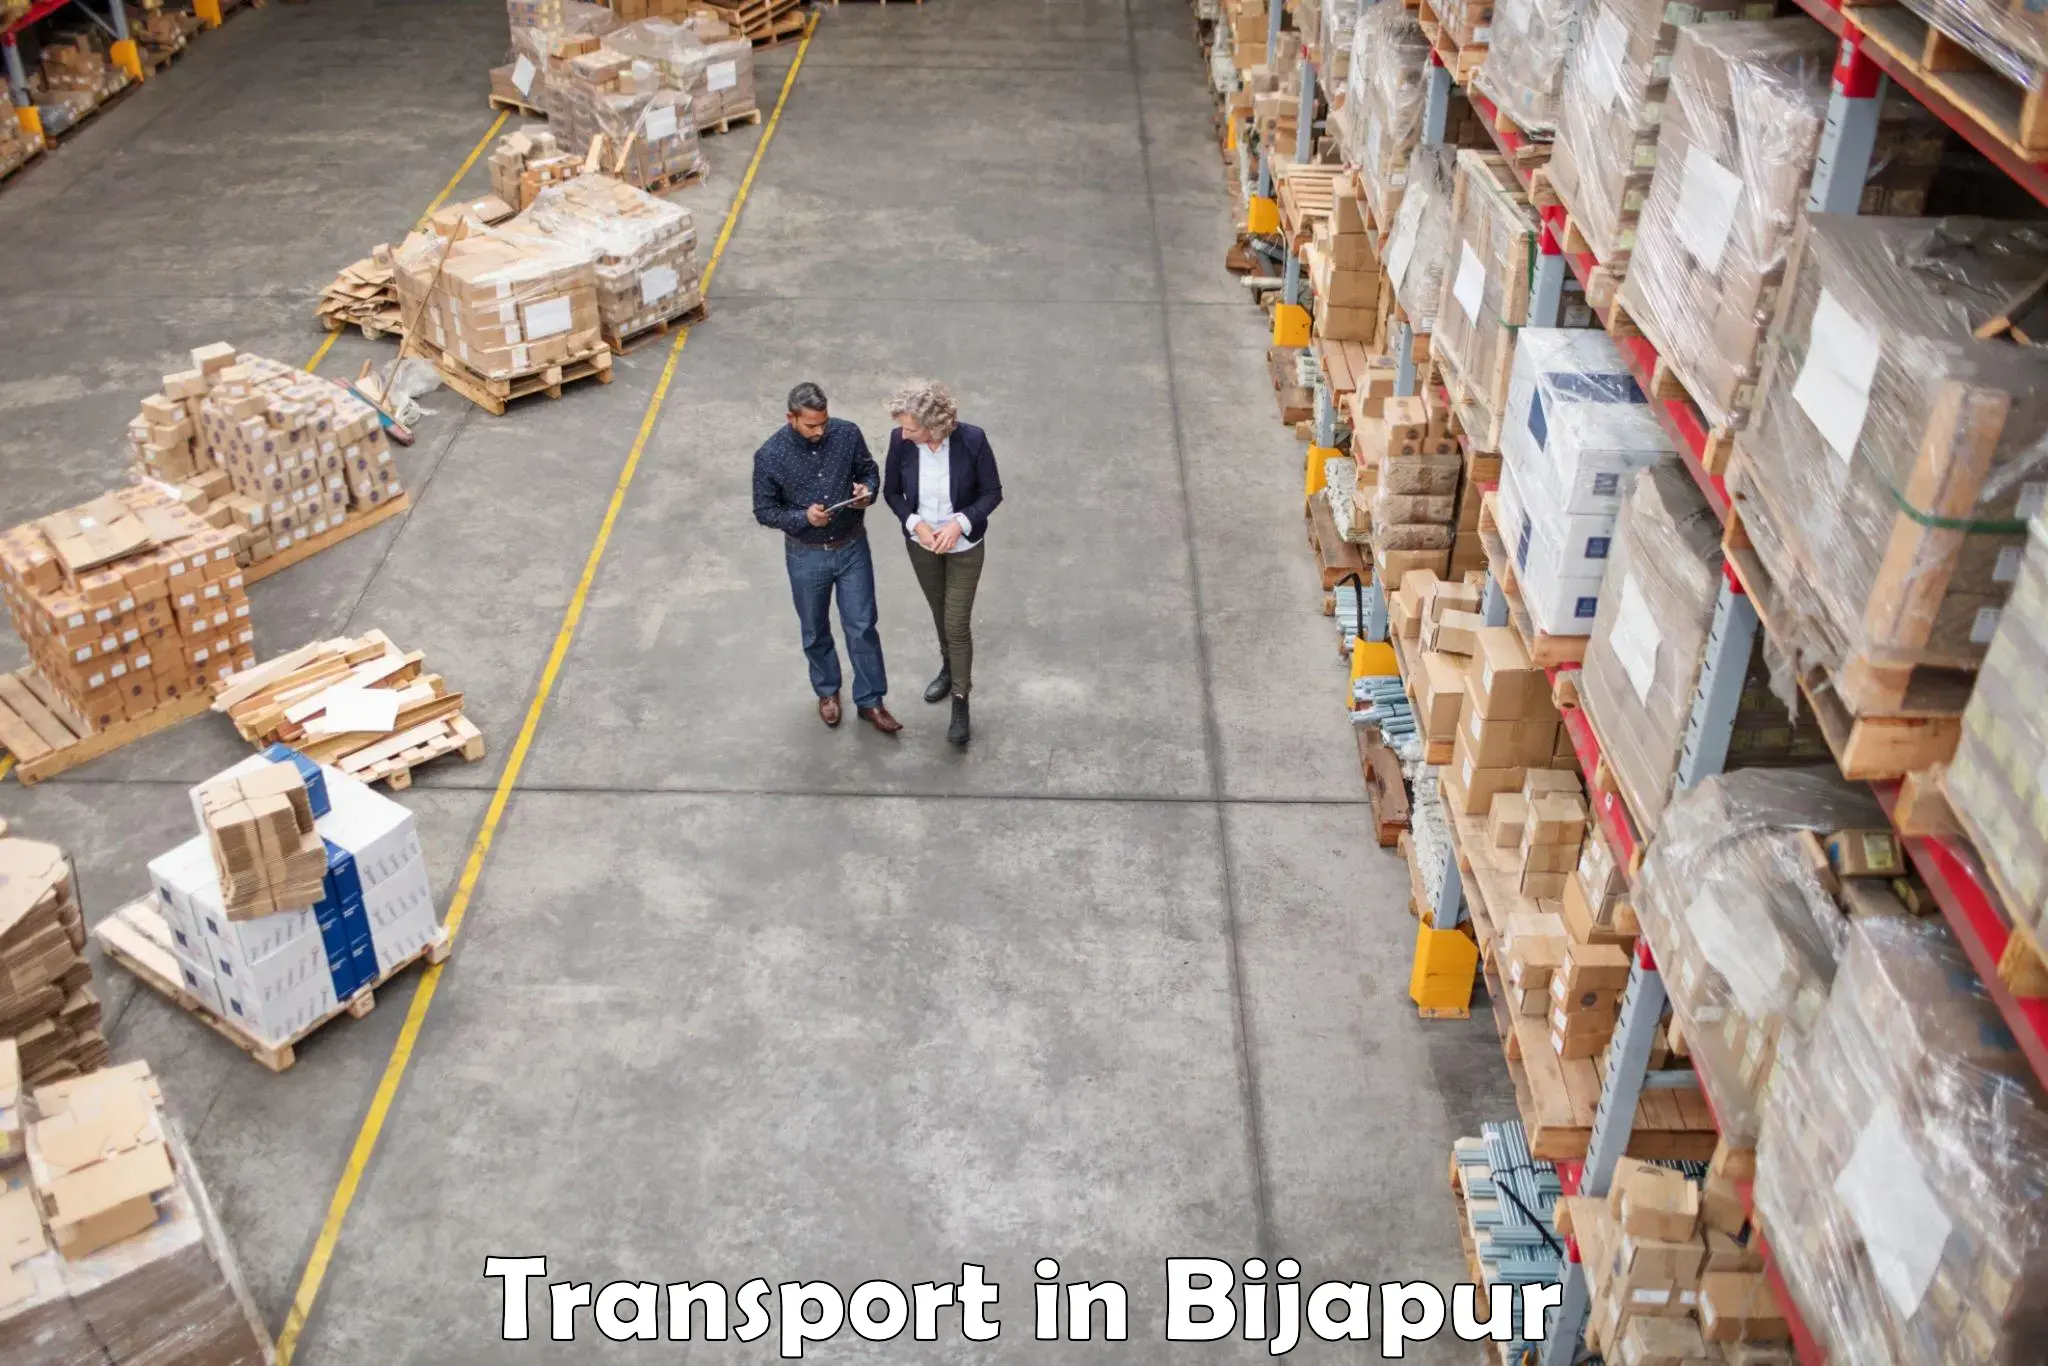 Furniture transport service in Bijapur